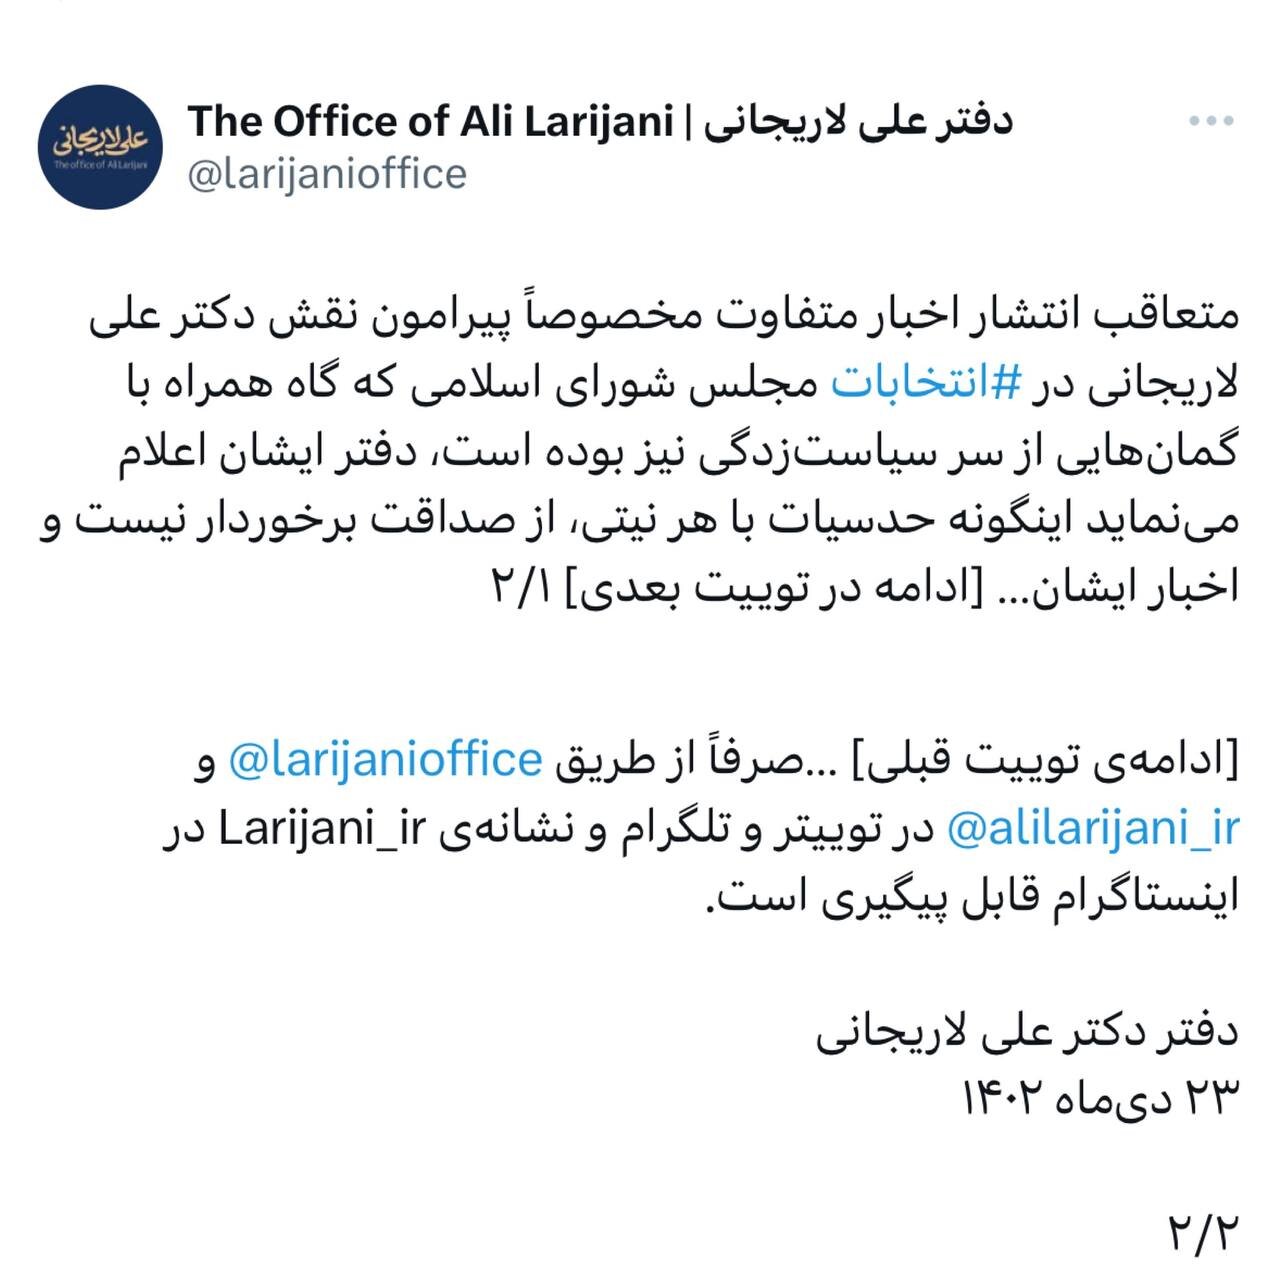 بیانیه مهم دفتر علی لاریجانی درباره انتخابات اسفند ۱۴۰۲ /اینگونه حدسیات با هر نیتی، از صداقت برخوردار نیست